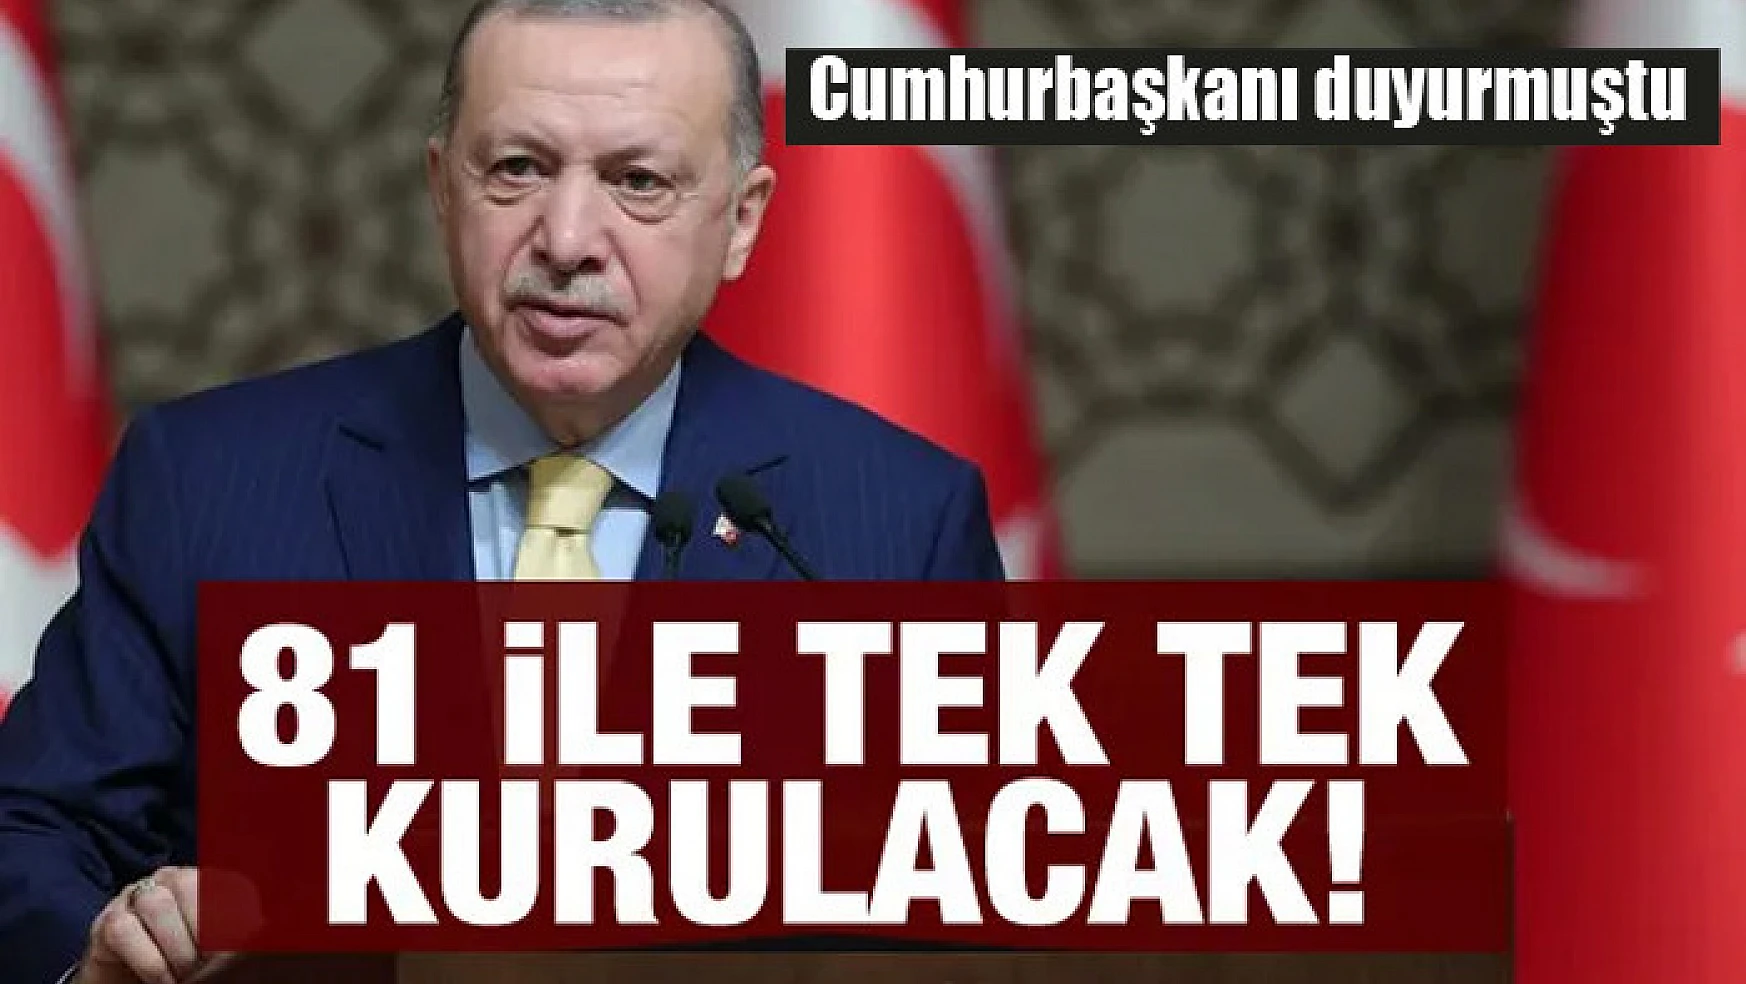 Erdoğan duyurmuştu! Her şehre özel ofis kurulacak